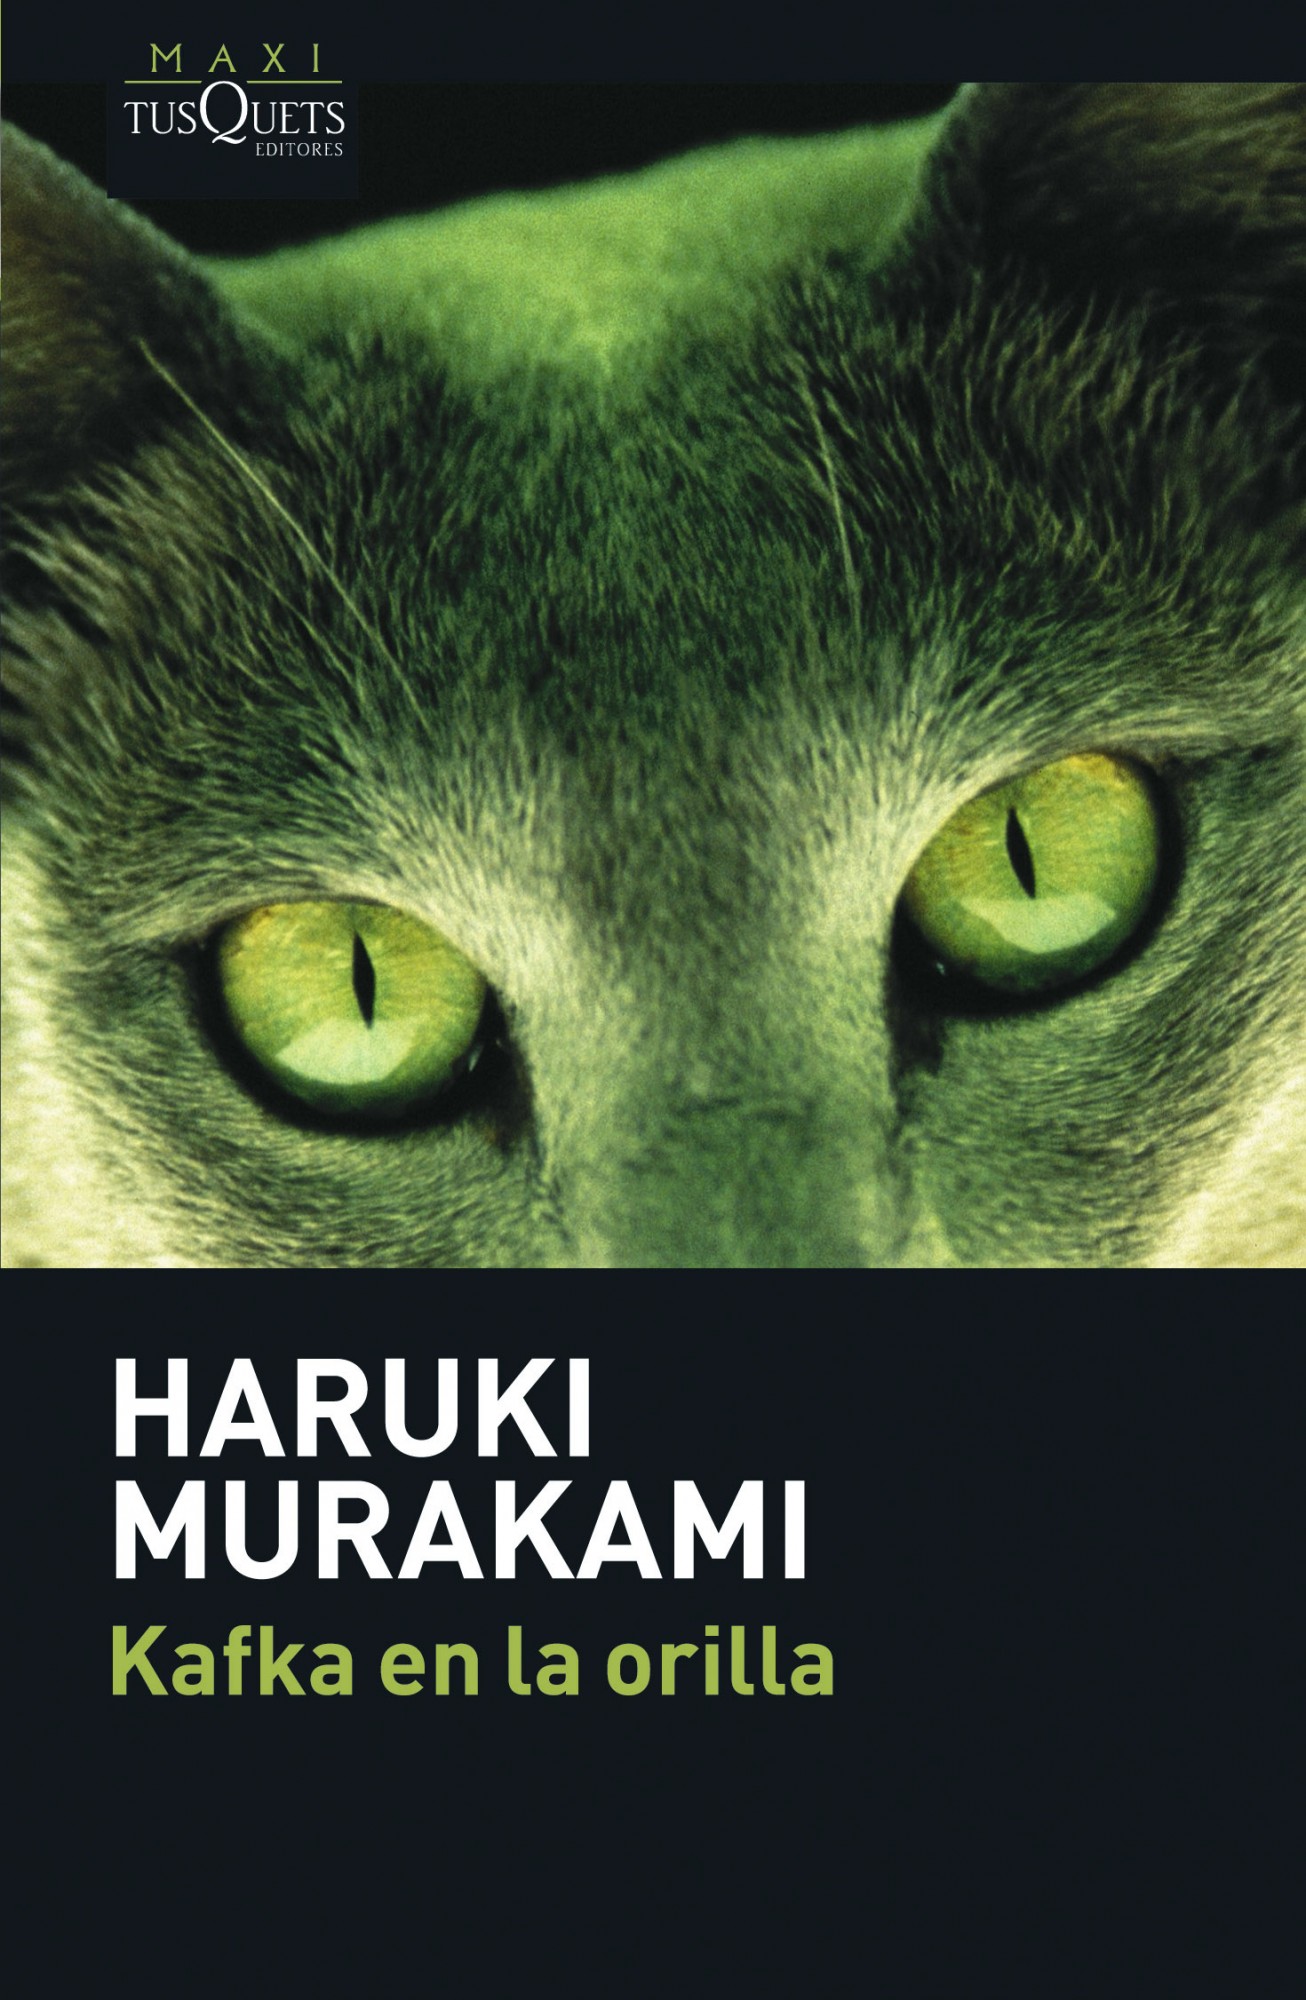 Resultado de imagen para haruki murakami libros